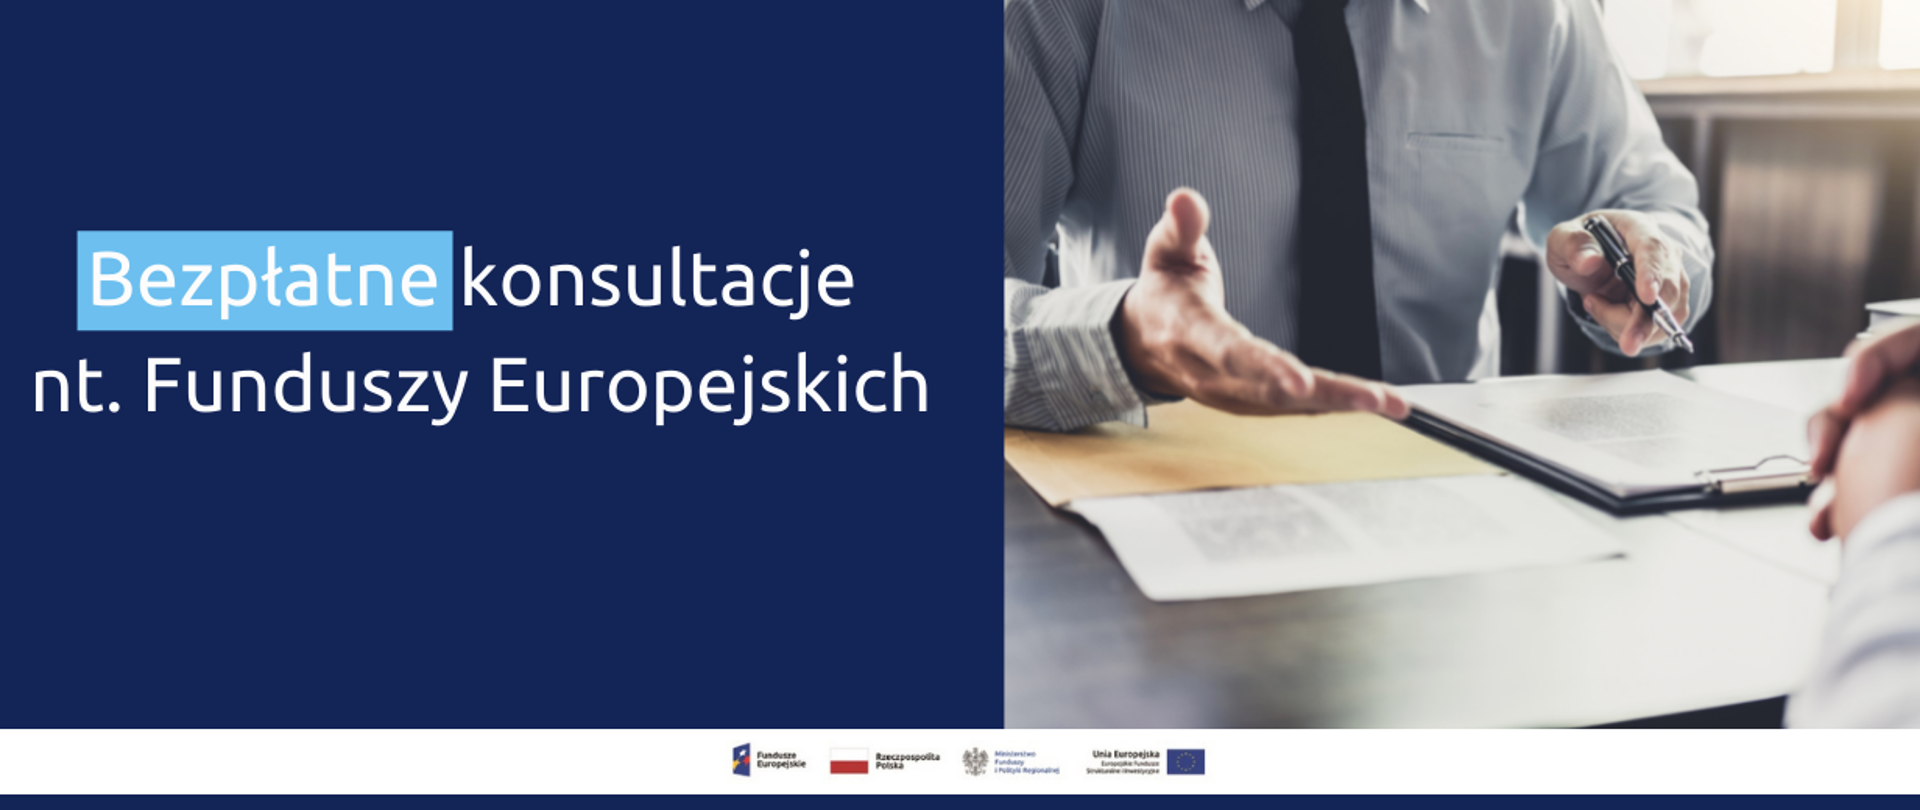 Napis: Bezpłatne konsultacje nt. Funduszy Europejskich. Obok zdjęcie męskich dłoni nad dokumentami.